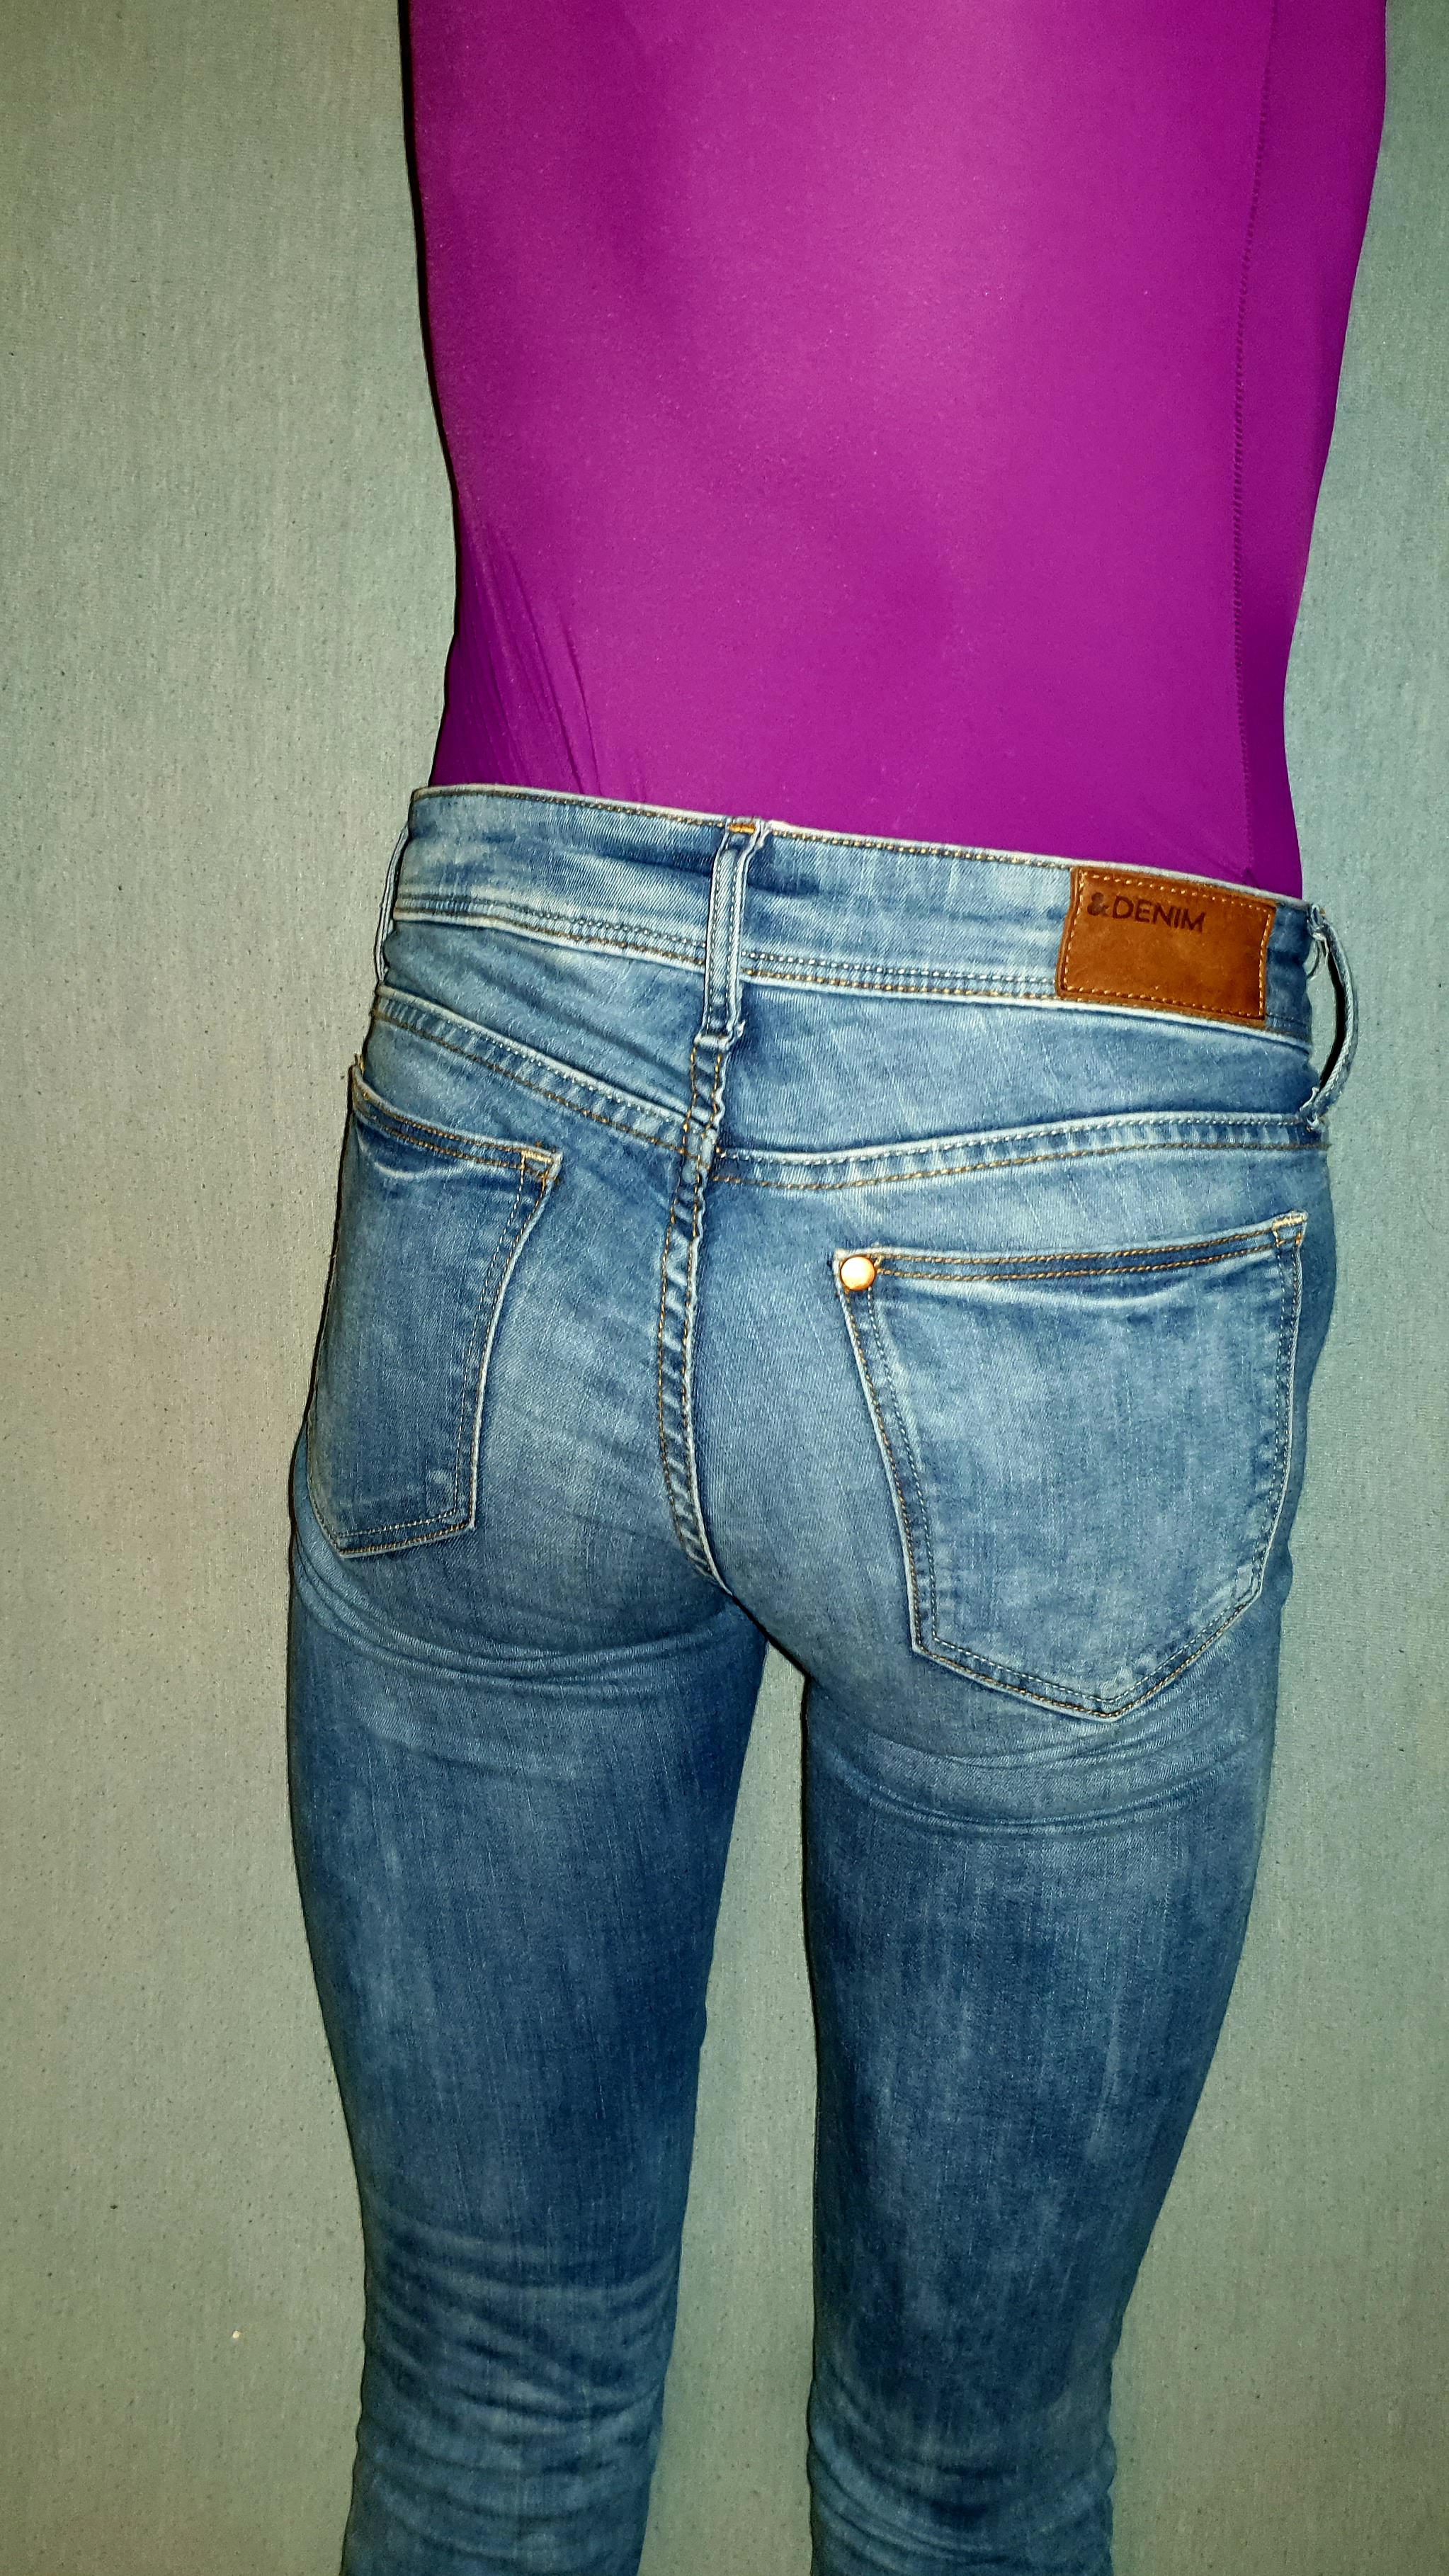 Skinny jeans | Scrolller